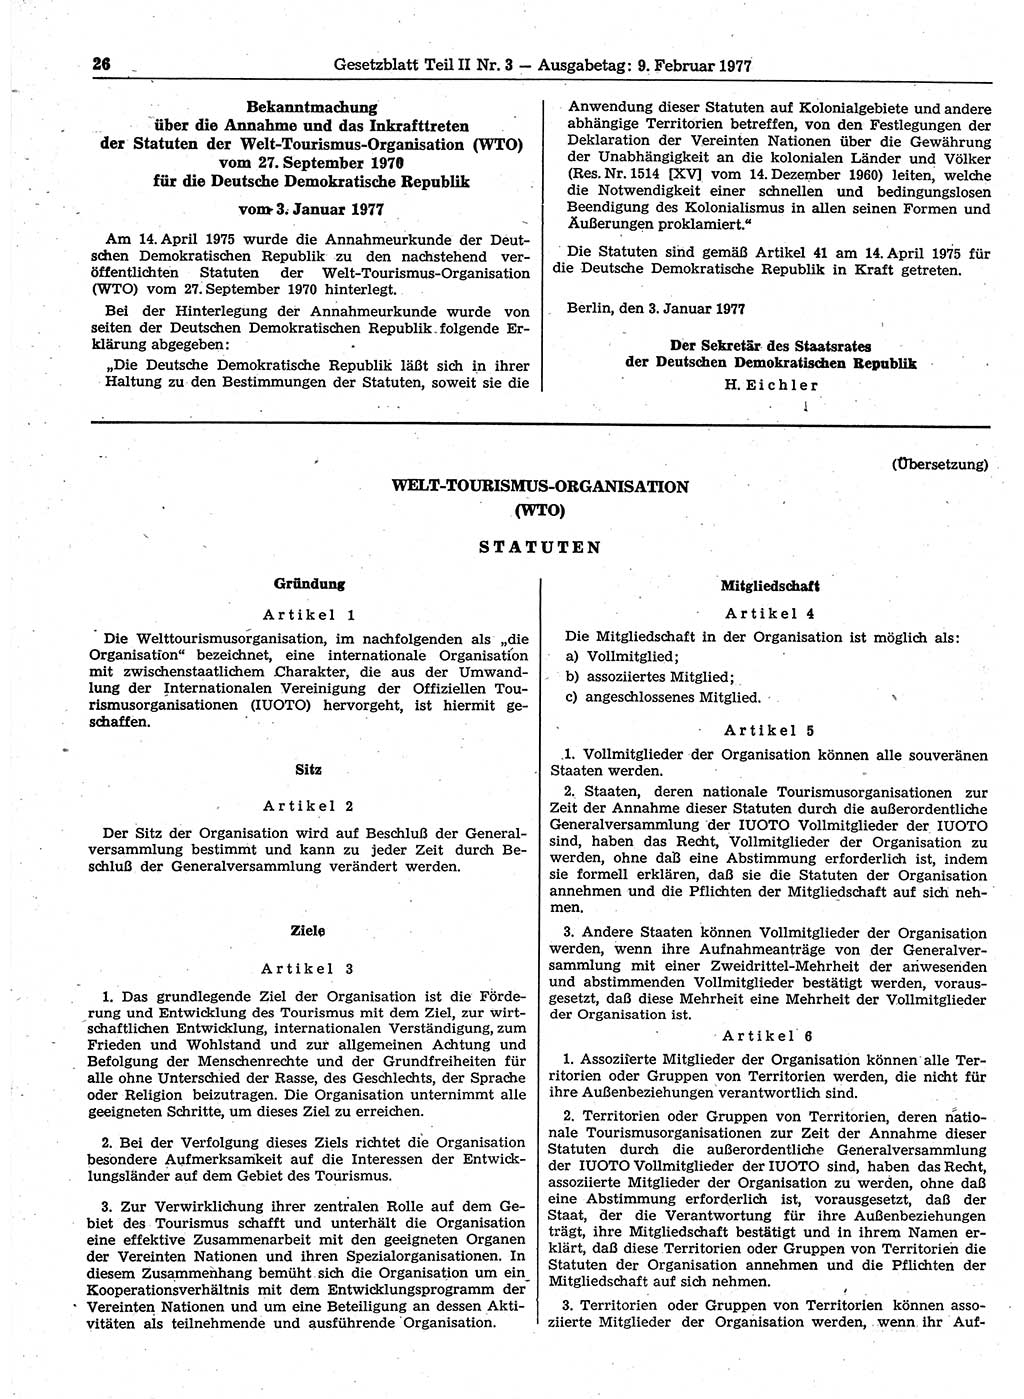 Gesetzblatt (GBl.) der Deutschen Demokratischen Republik (DDR) Teil ⅠⅠ 1977, Seite 26 (GBl. DDR ⅠⅠ 1977, S. 26)